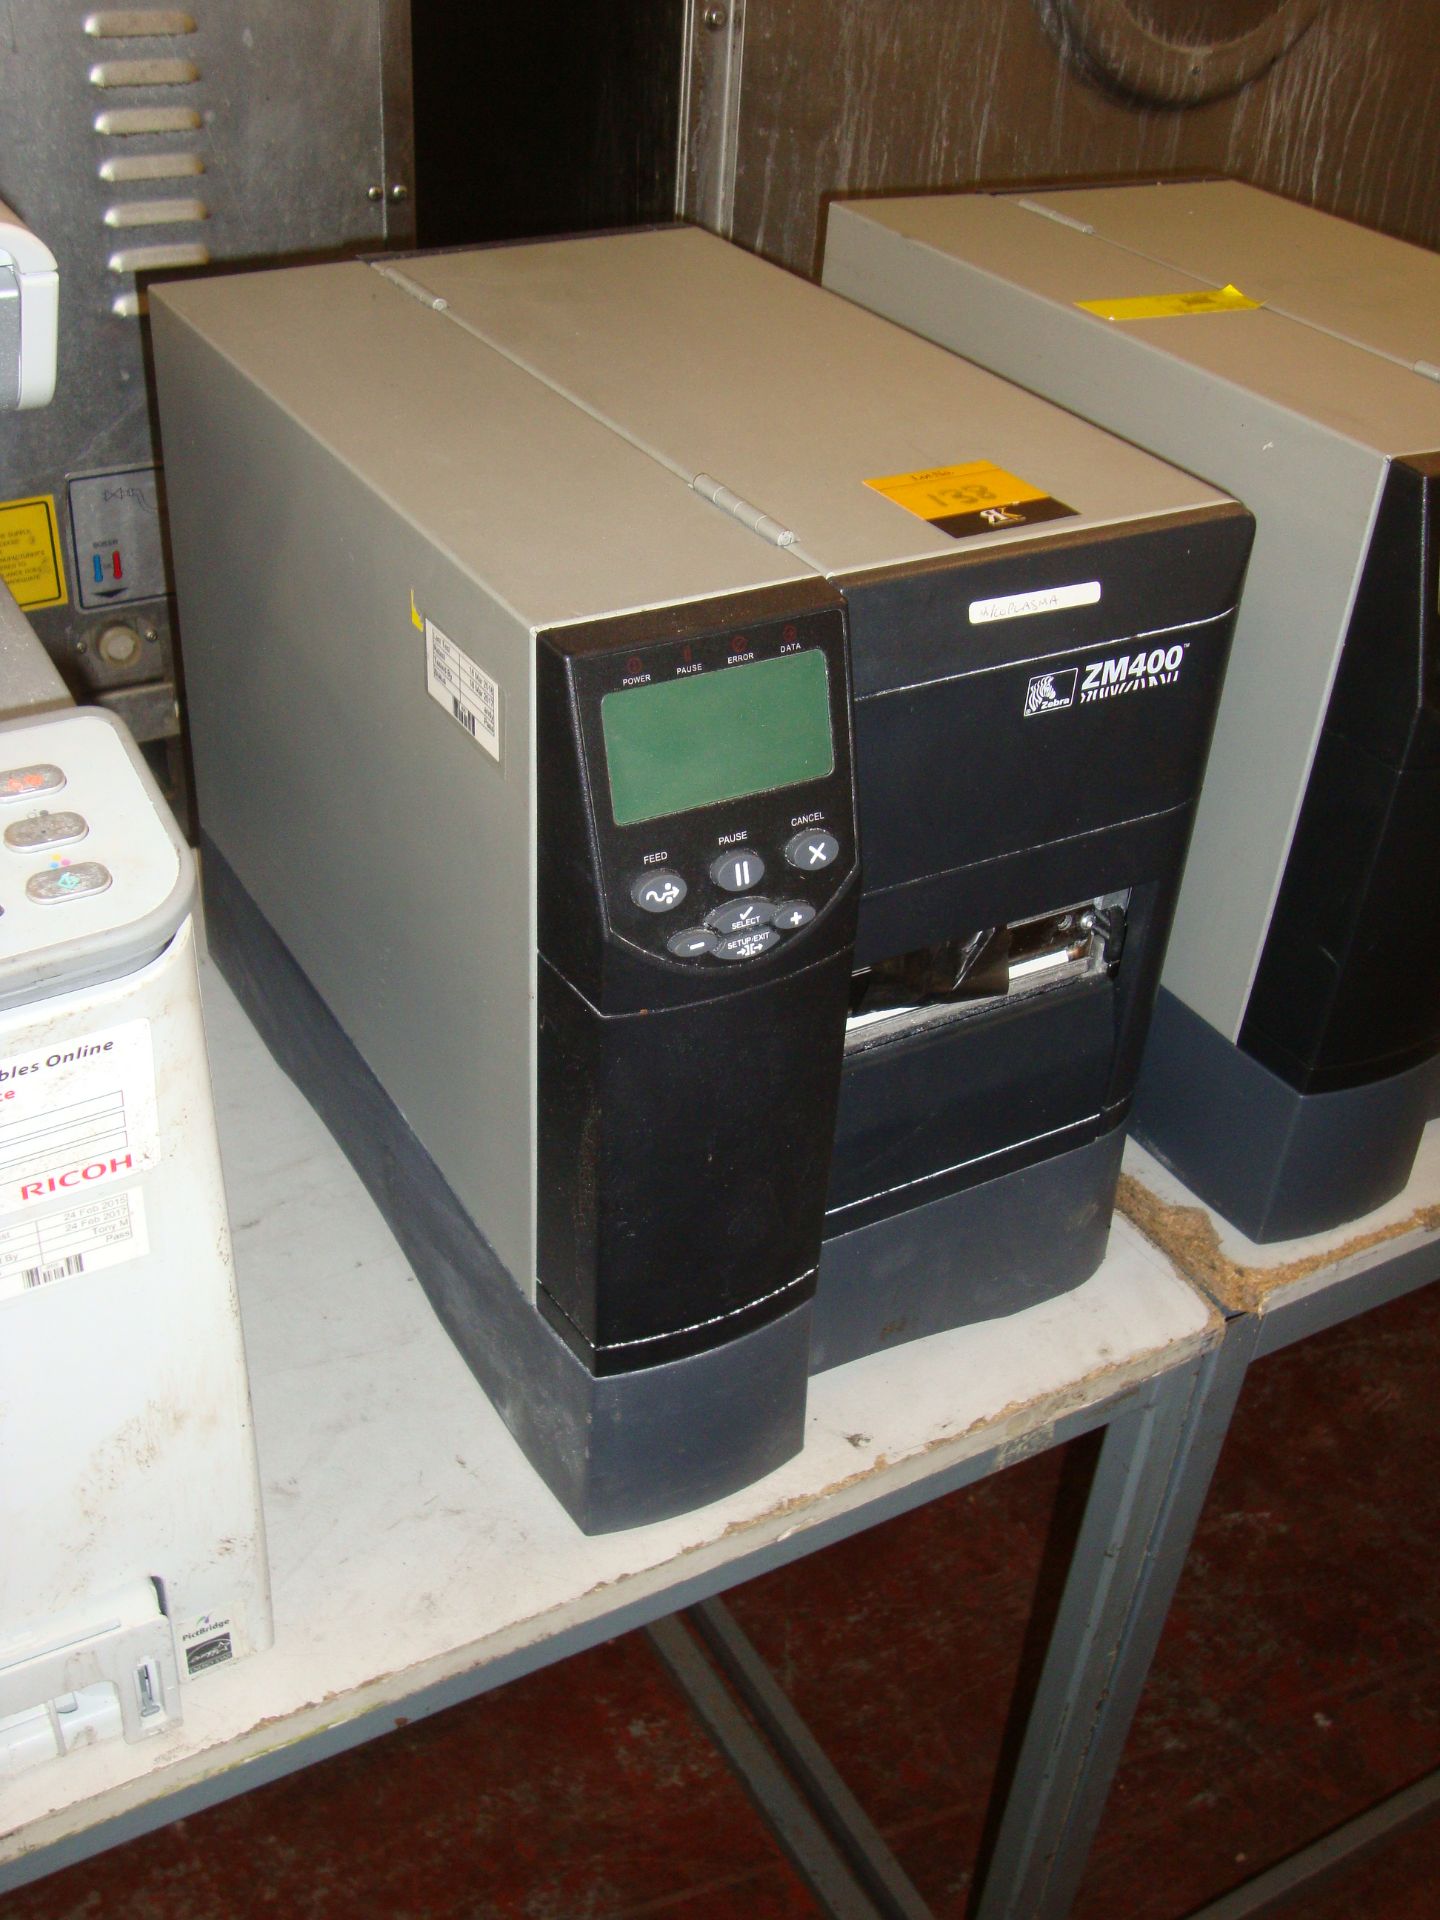 Zebra ZM400 printer